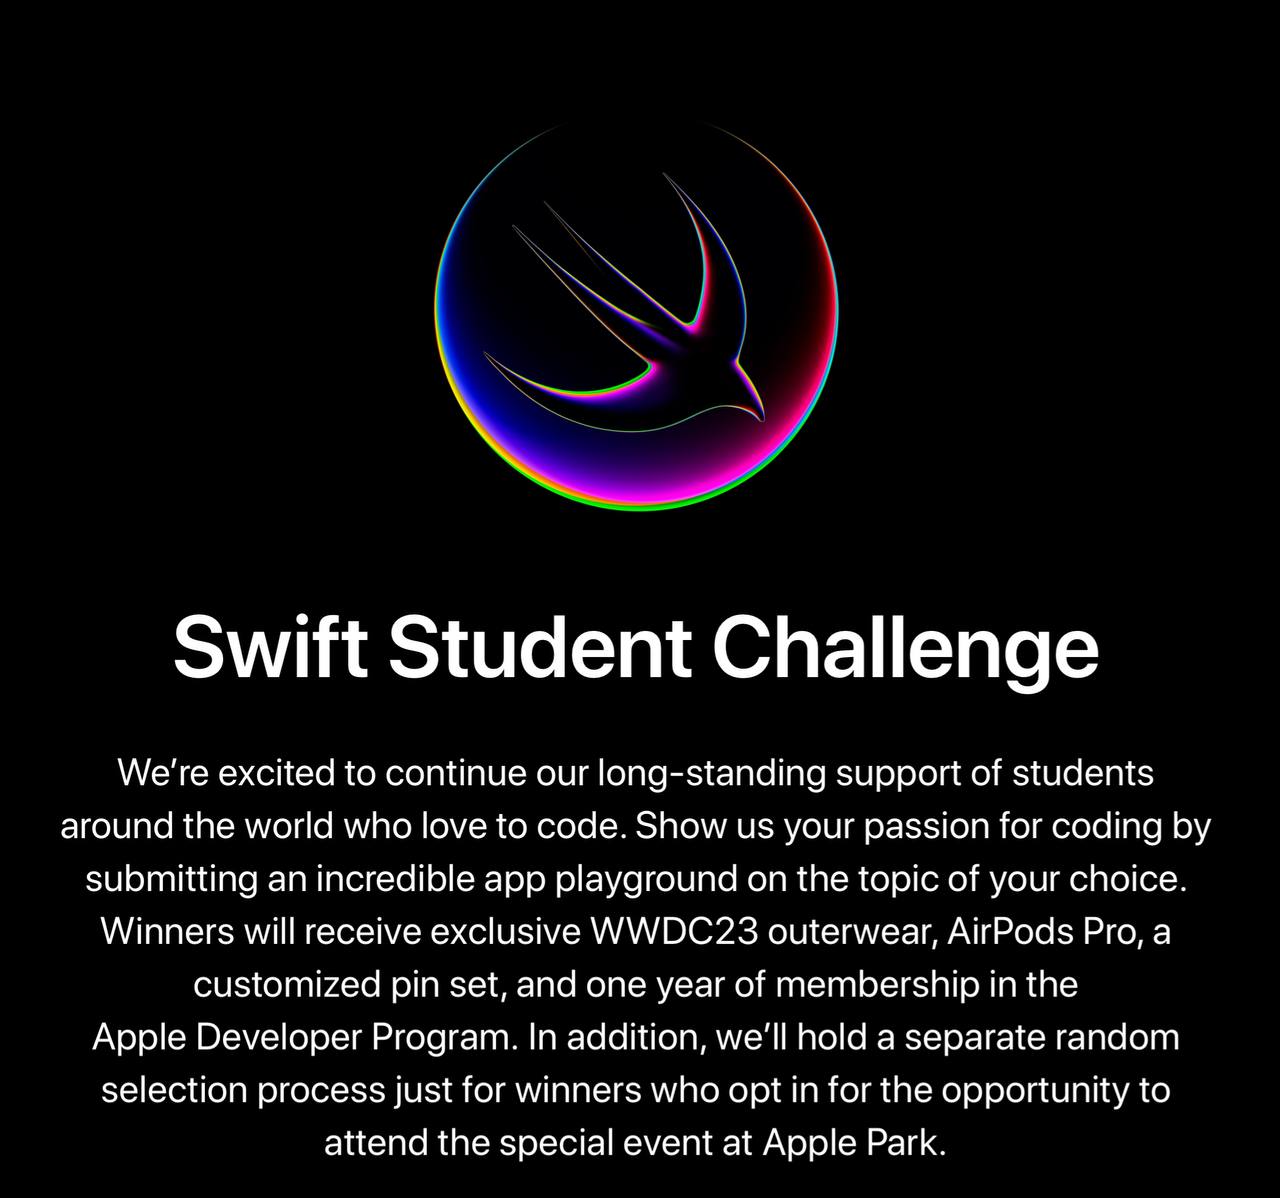 Конкурс для студентов, программирующих на Swift даст шанс выиграть ценные и памятные призы